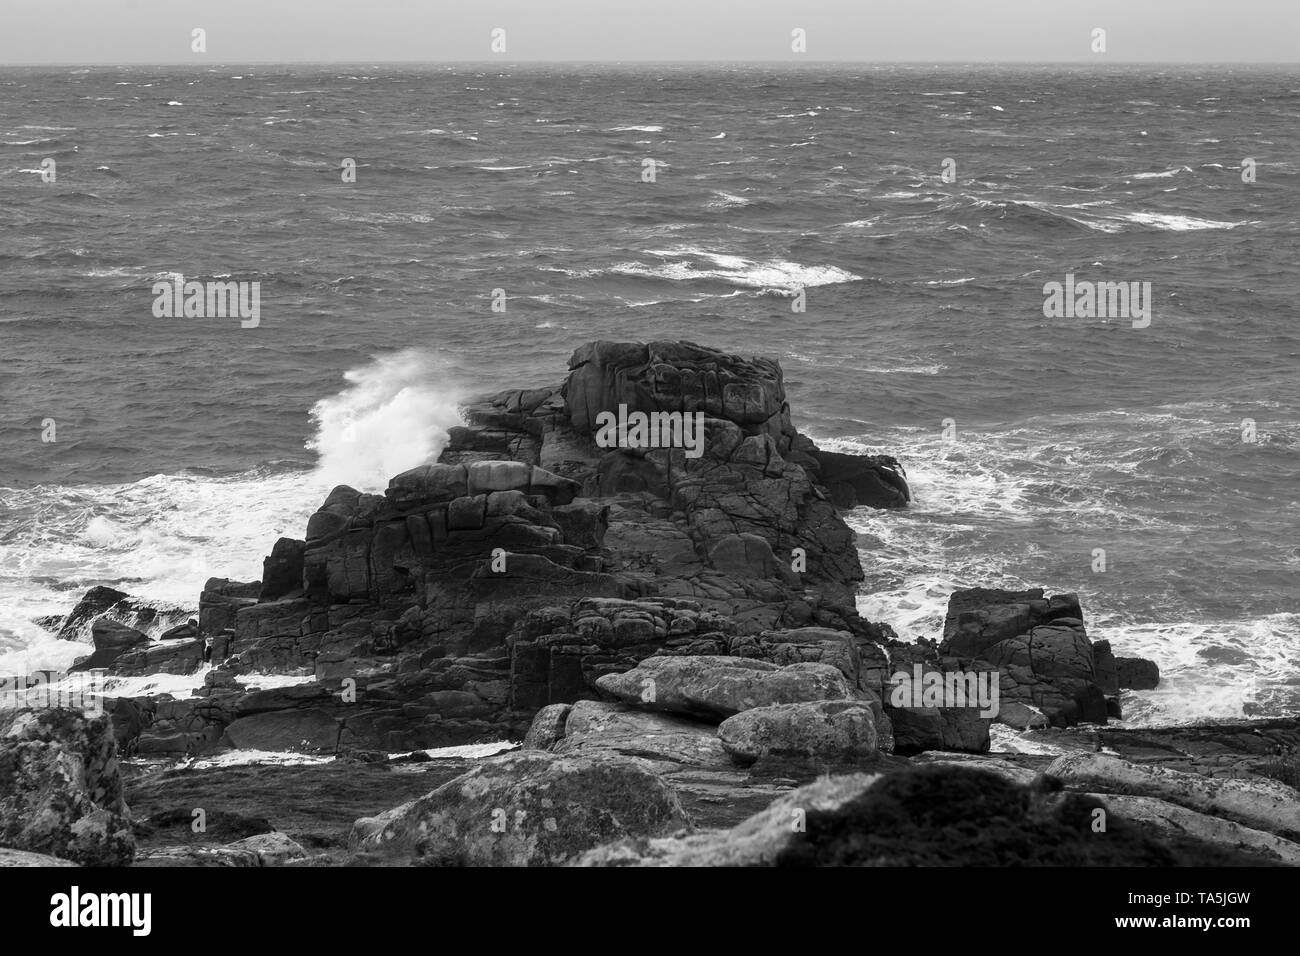 Porth Hellick punto en marea baja y en un fuerte viento onshore, Saint Mary's, Isles of Scilly, UK: versión en blanco y negro Foto de stock